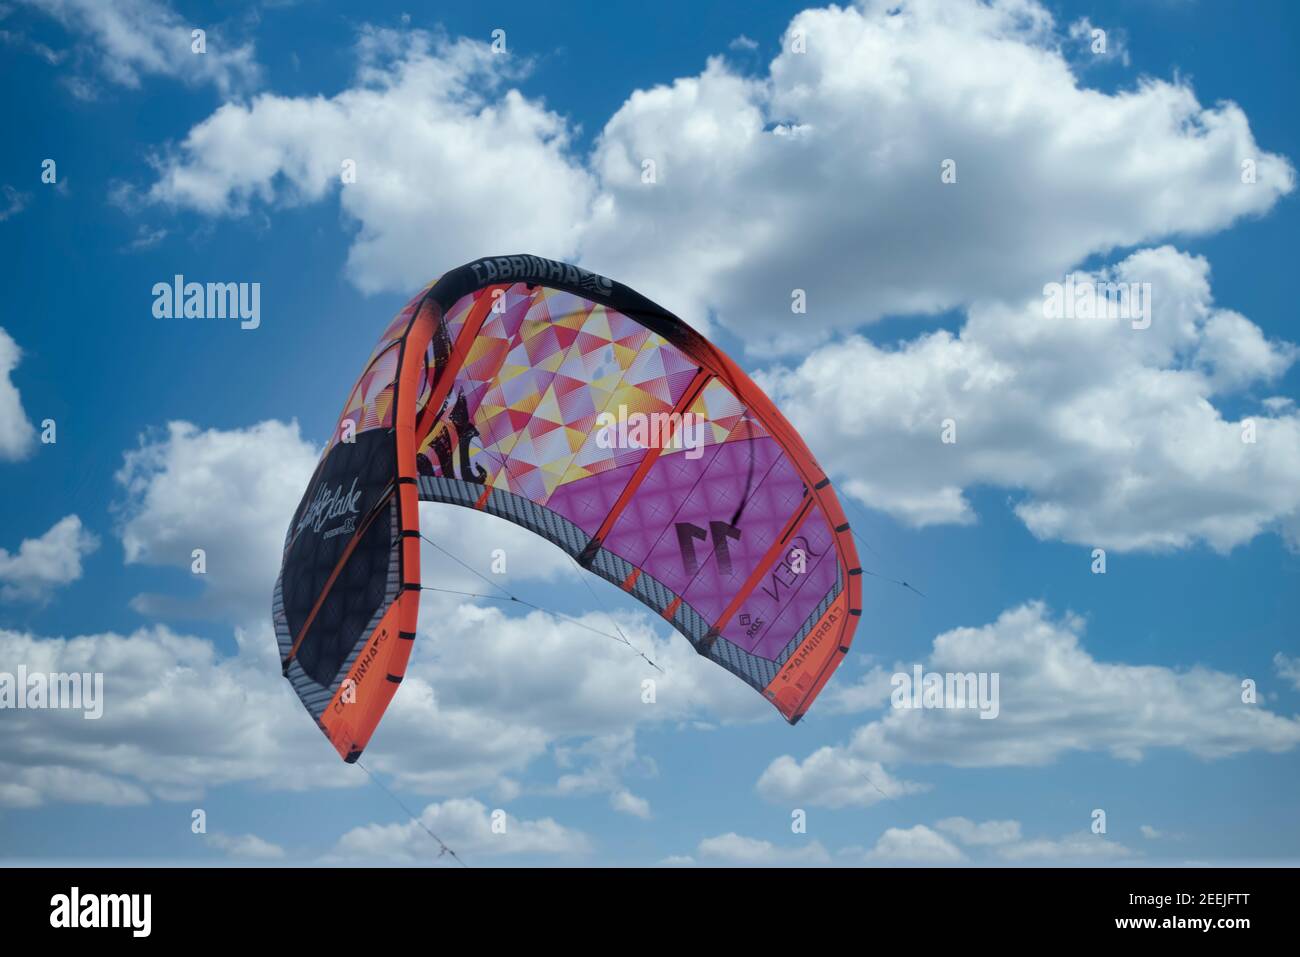 Primo piano di una colorata vela kitesurf volare nel cielo nuvoloso. Oceano caraibico, Messico Foto Stock